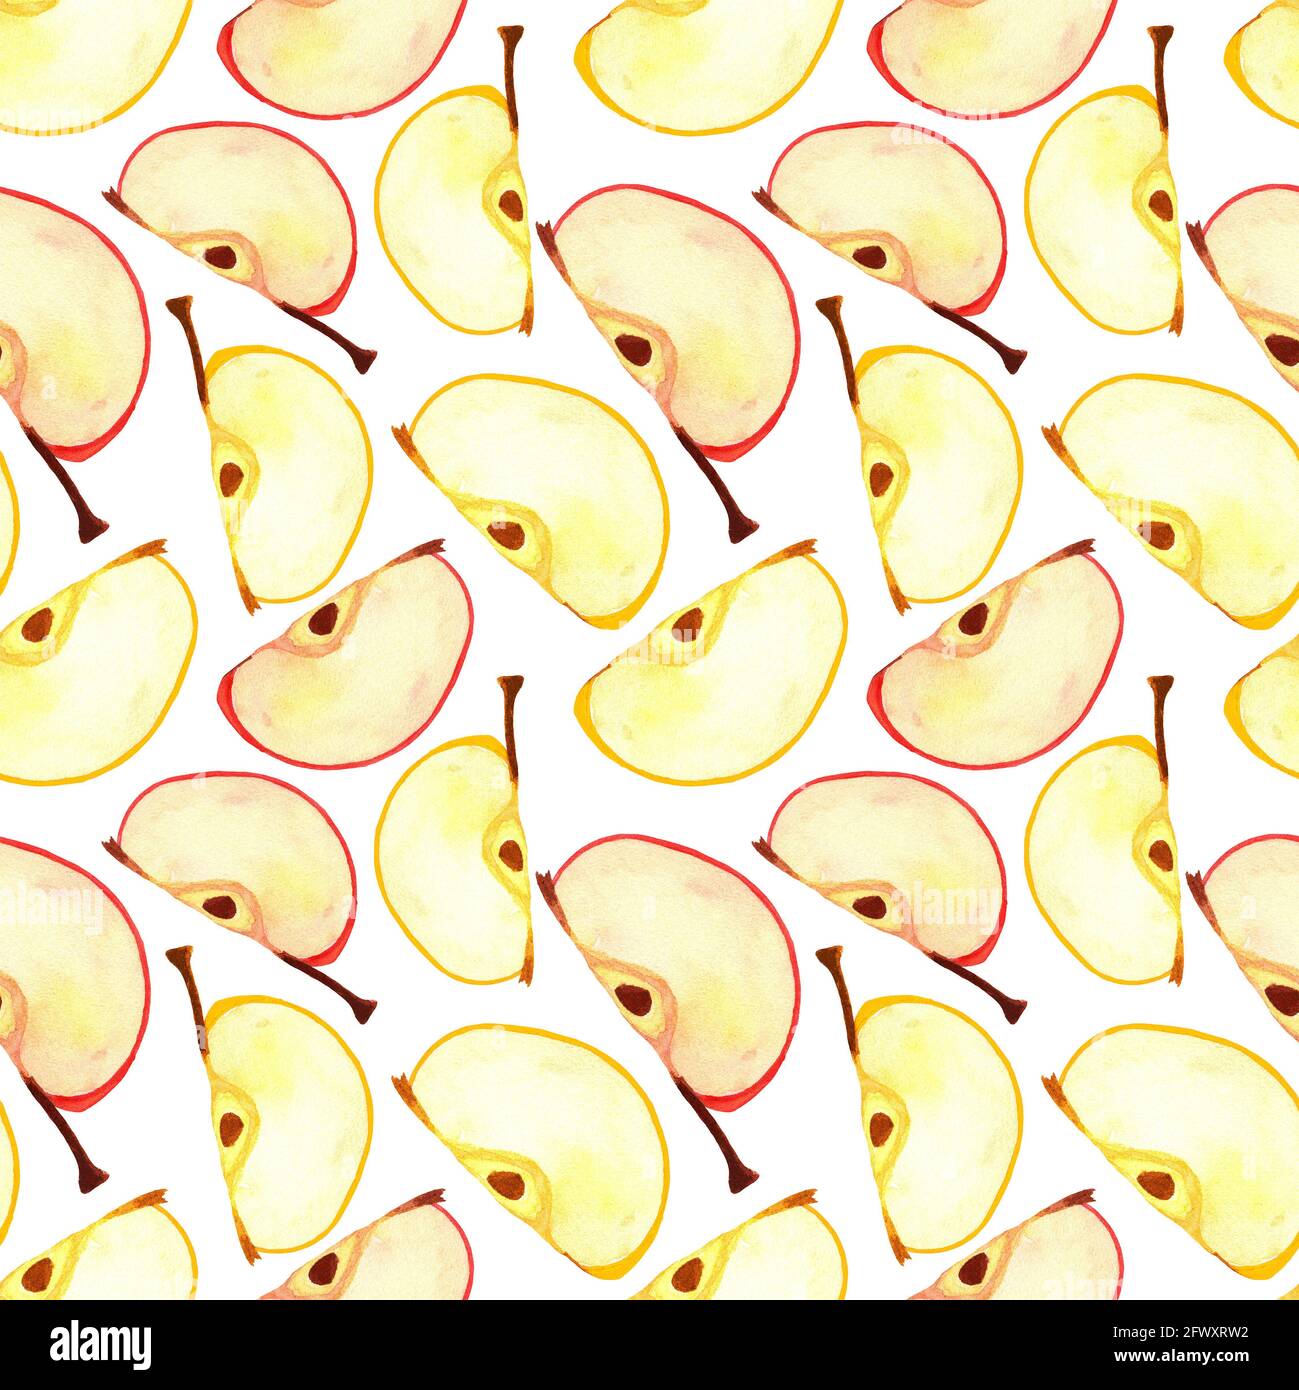 Frisches Apfelmuster. In Scheiben geschnittene Viertel Apfel Aquarell nahtloses Muster. Stockfoto